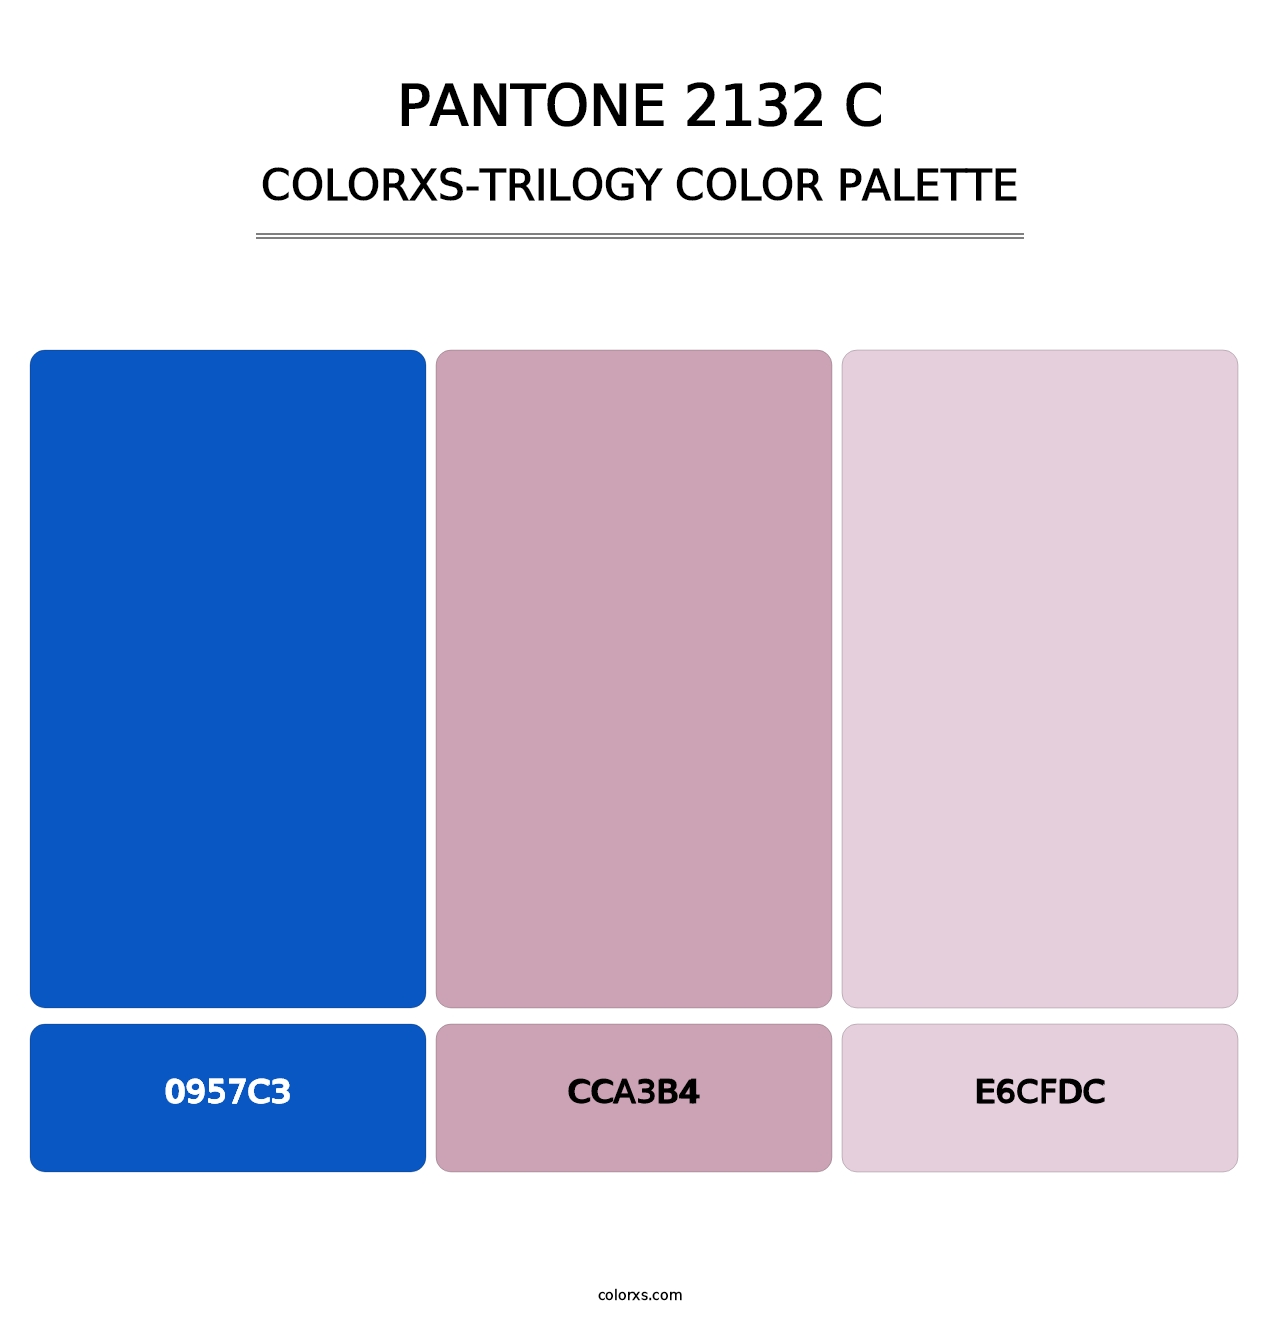 PANTONE 2132 C - Colorxs Trilogy Palette